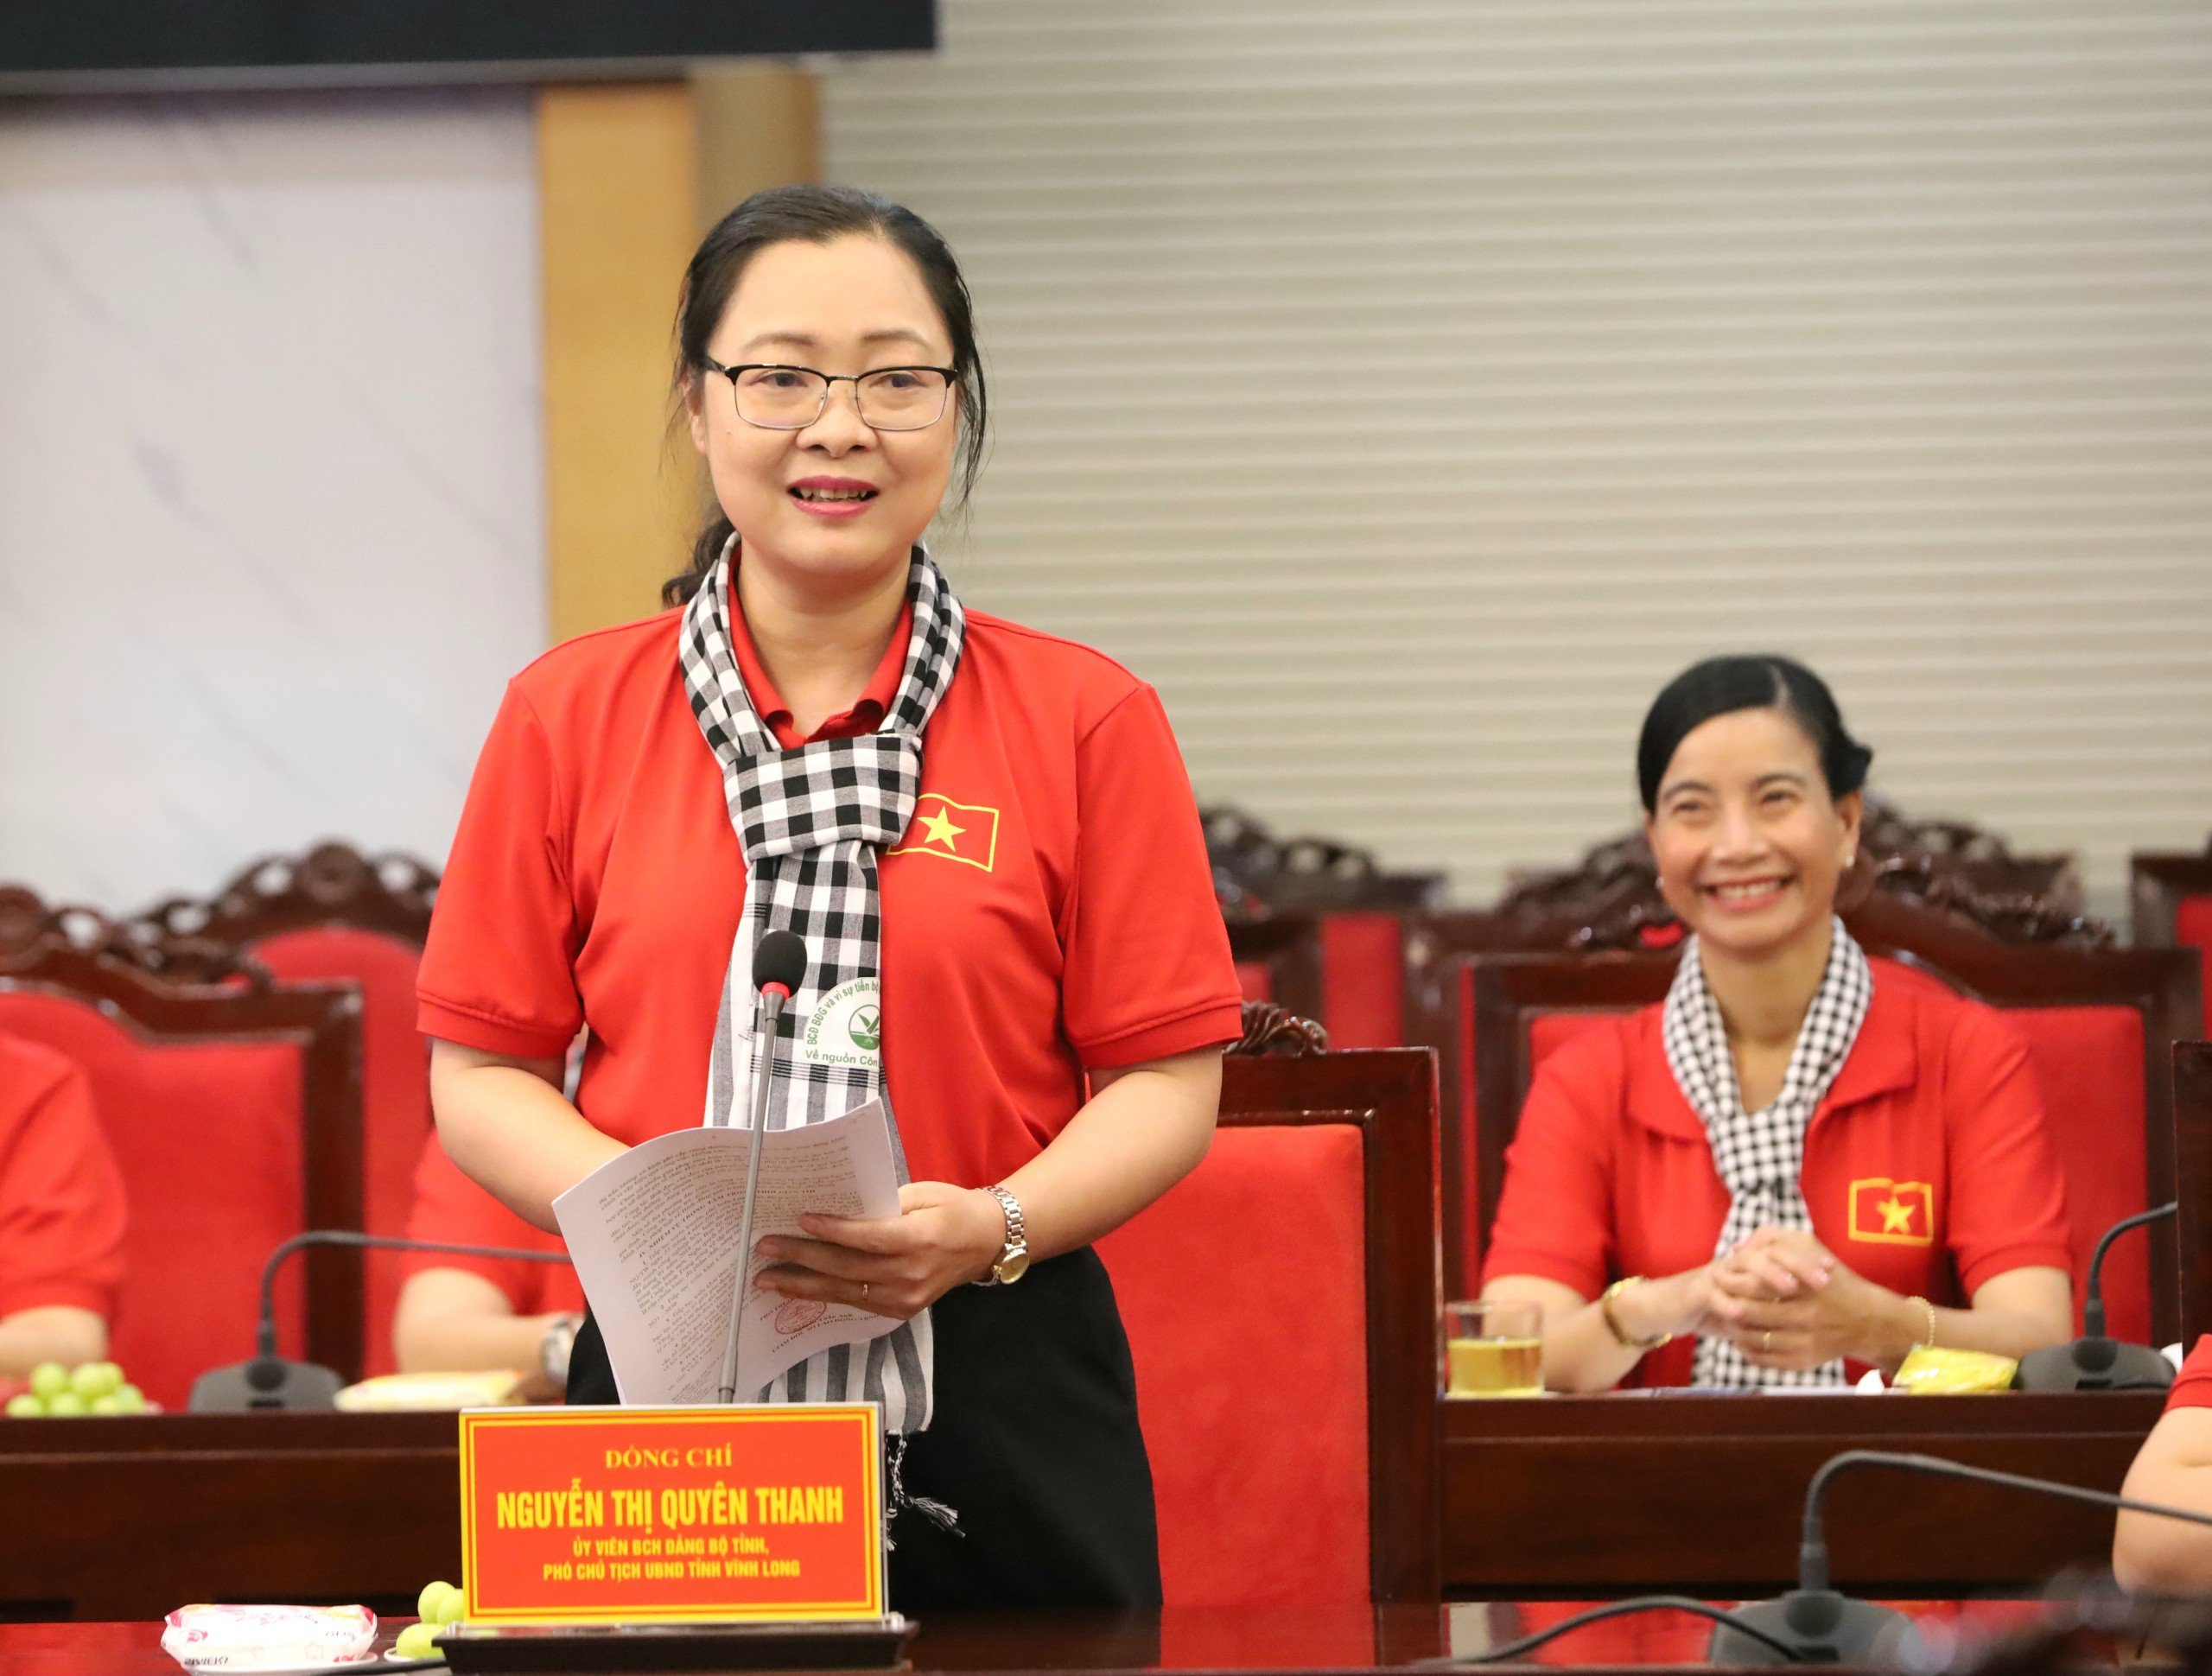 Bà Nguyễn Thị Quyên Thanh - Phó Chủ tịch UBND tỉnh, Trưởng ban Chỉ đạo bình đẳng giới và vì sự tiến bộ của phụ nữ tỉnh Vĩnh Long trao đổi tại buổi làm việc.